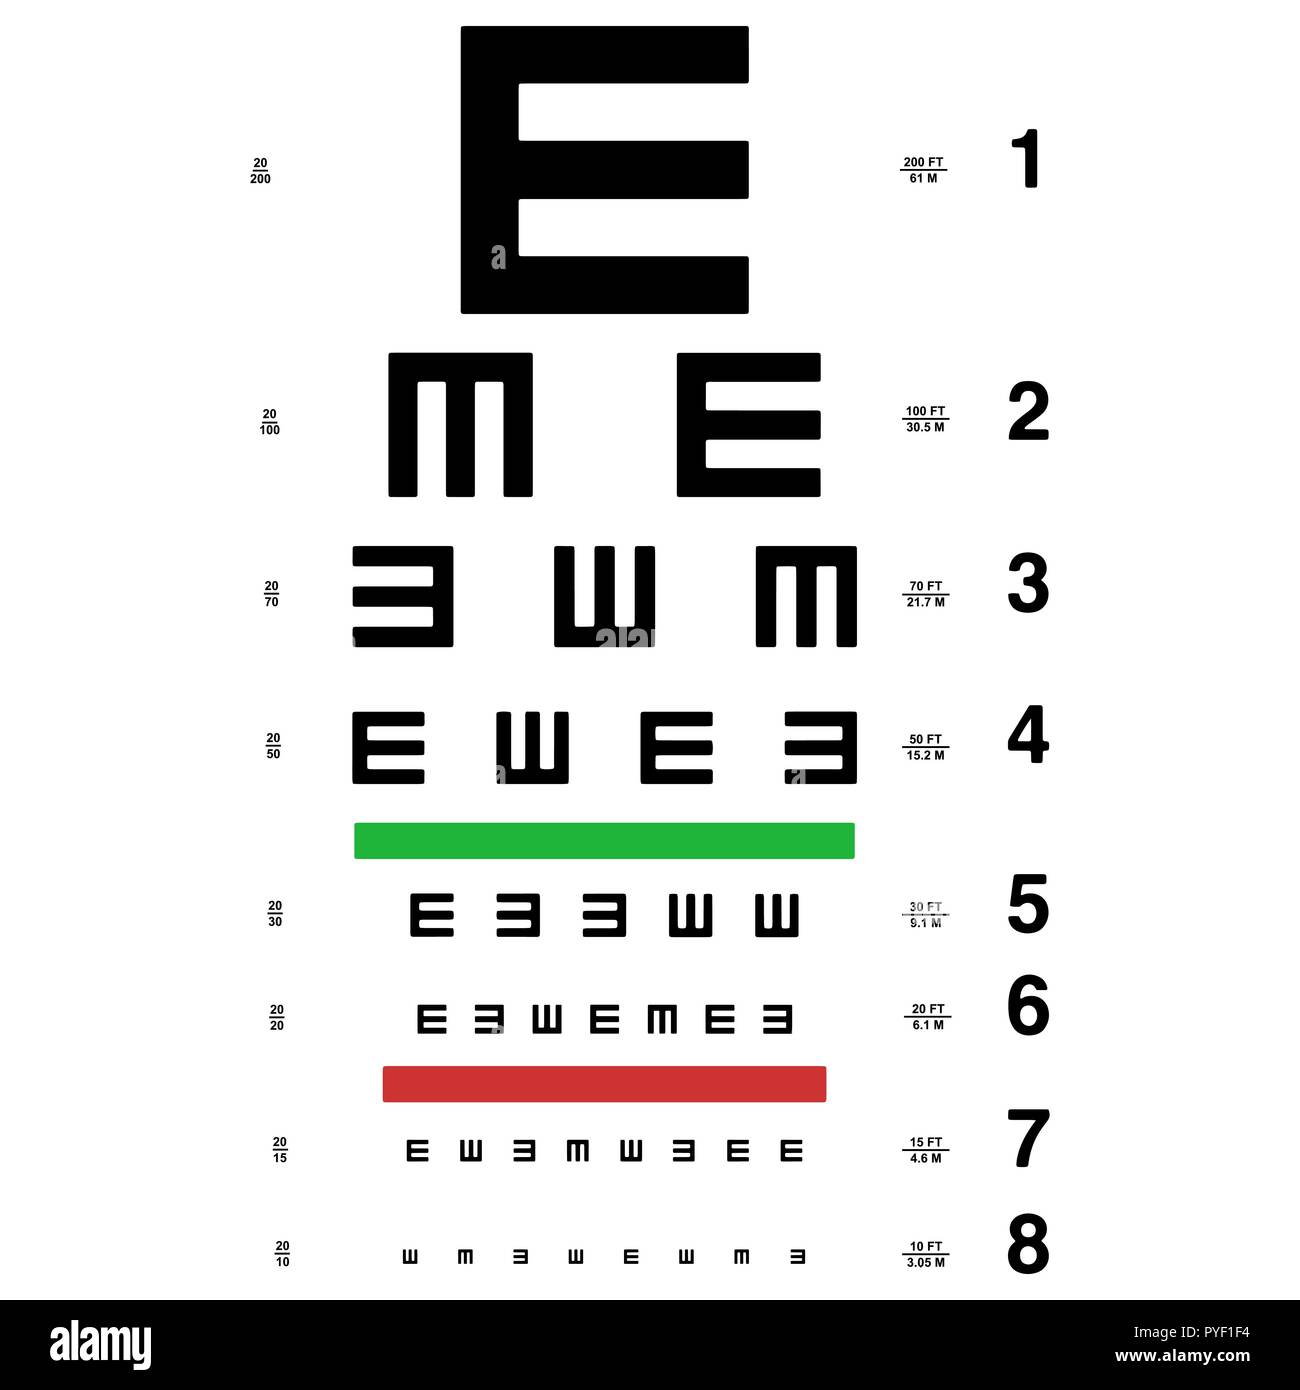 眼力眼科医生测试 库存图片. 图片 包括有 健康, 视力测定, 玻璃, 医学, 人员, 验光师, 参见, 眼睛 - 20198849